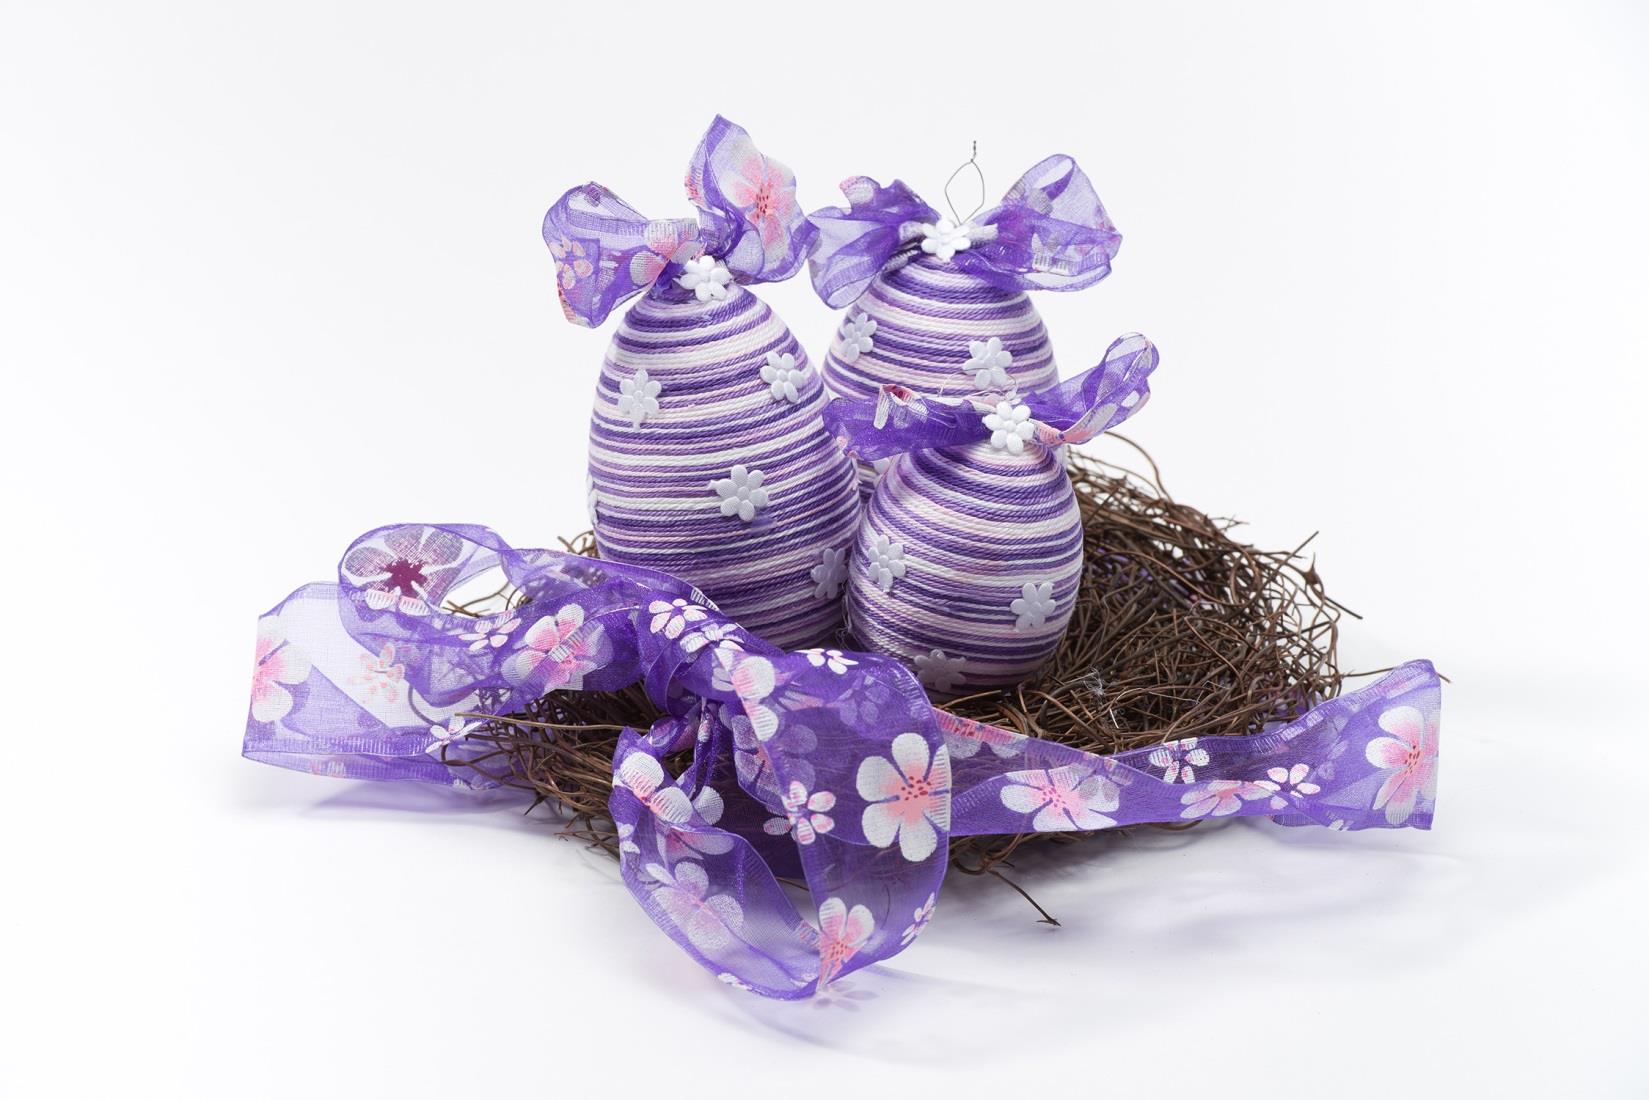 Velikonoční vajíčka Materiál: slepičí vejce nebo polystyrenové vejce, bavlnka, dekorační materiál Rozměry: různé dle použitého